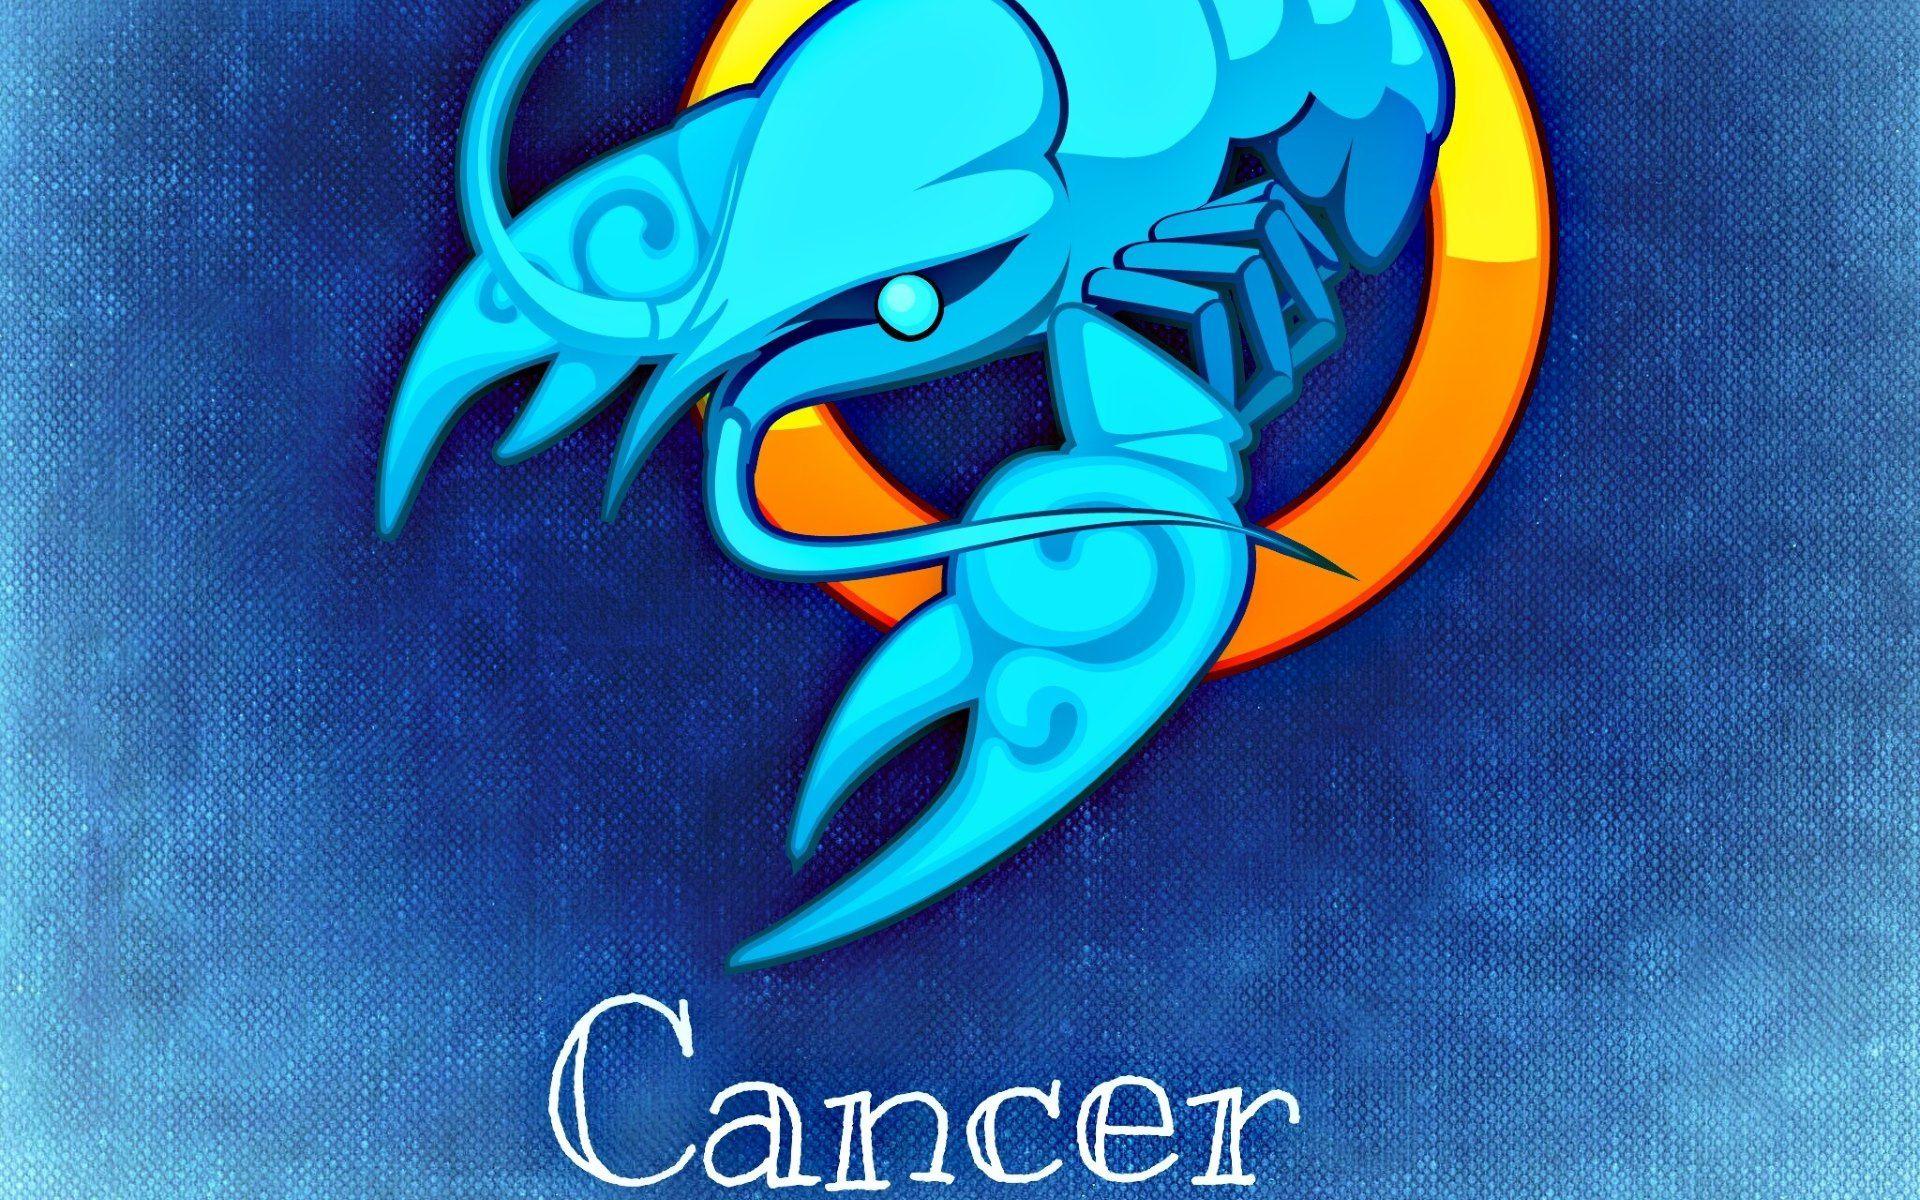 Horoscope Full HD Wallpaper